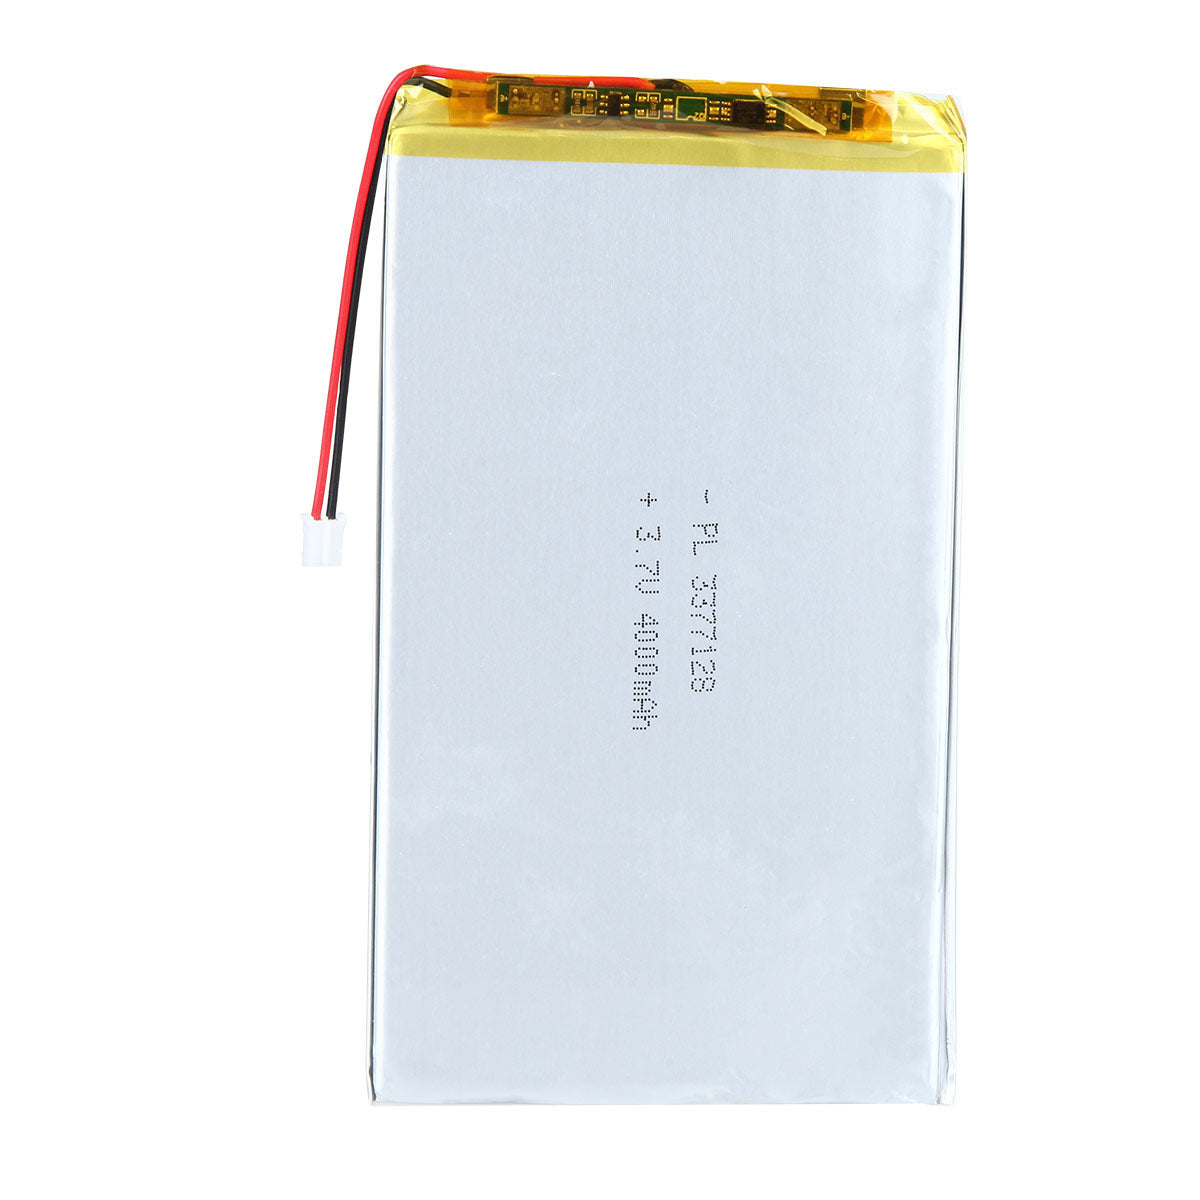 3.7V 4000mAh 3377128 Batterie lithium-polymère rechargeable Longueur 130mm